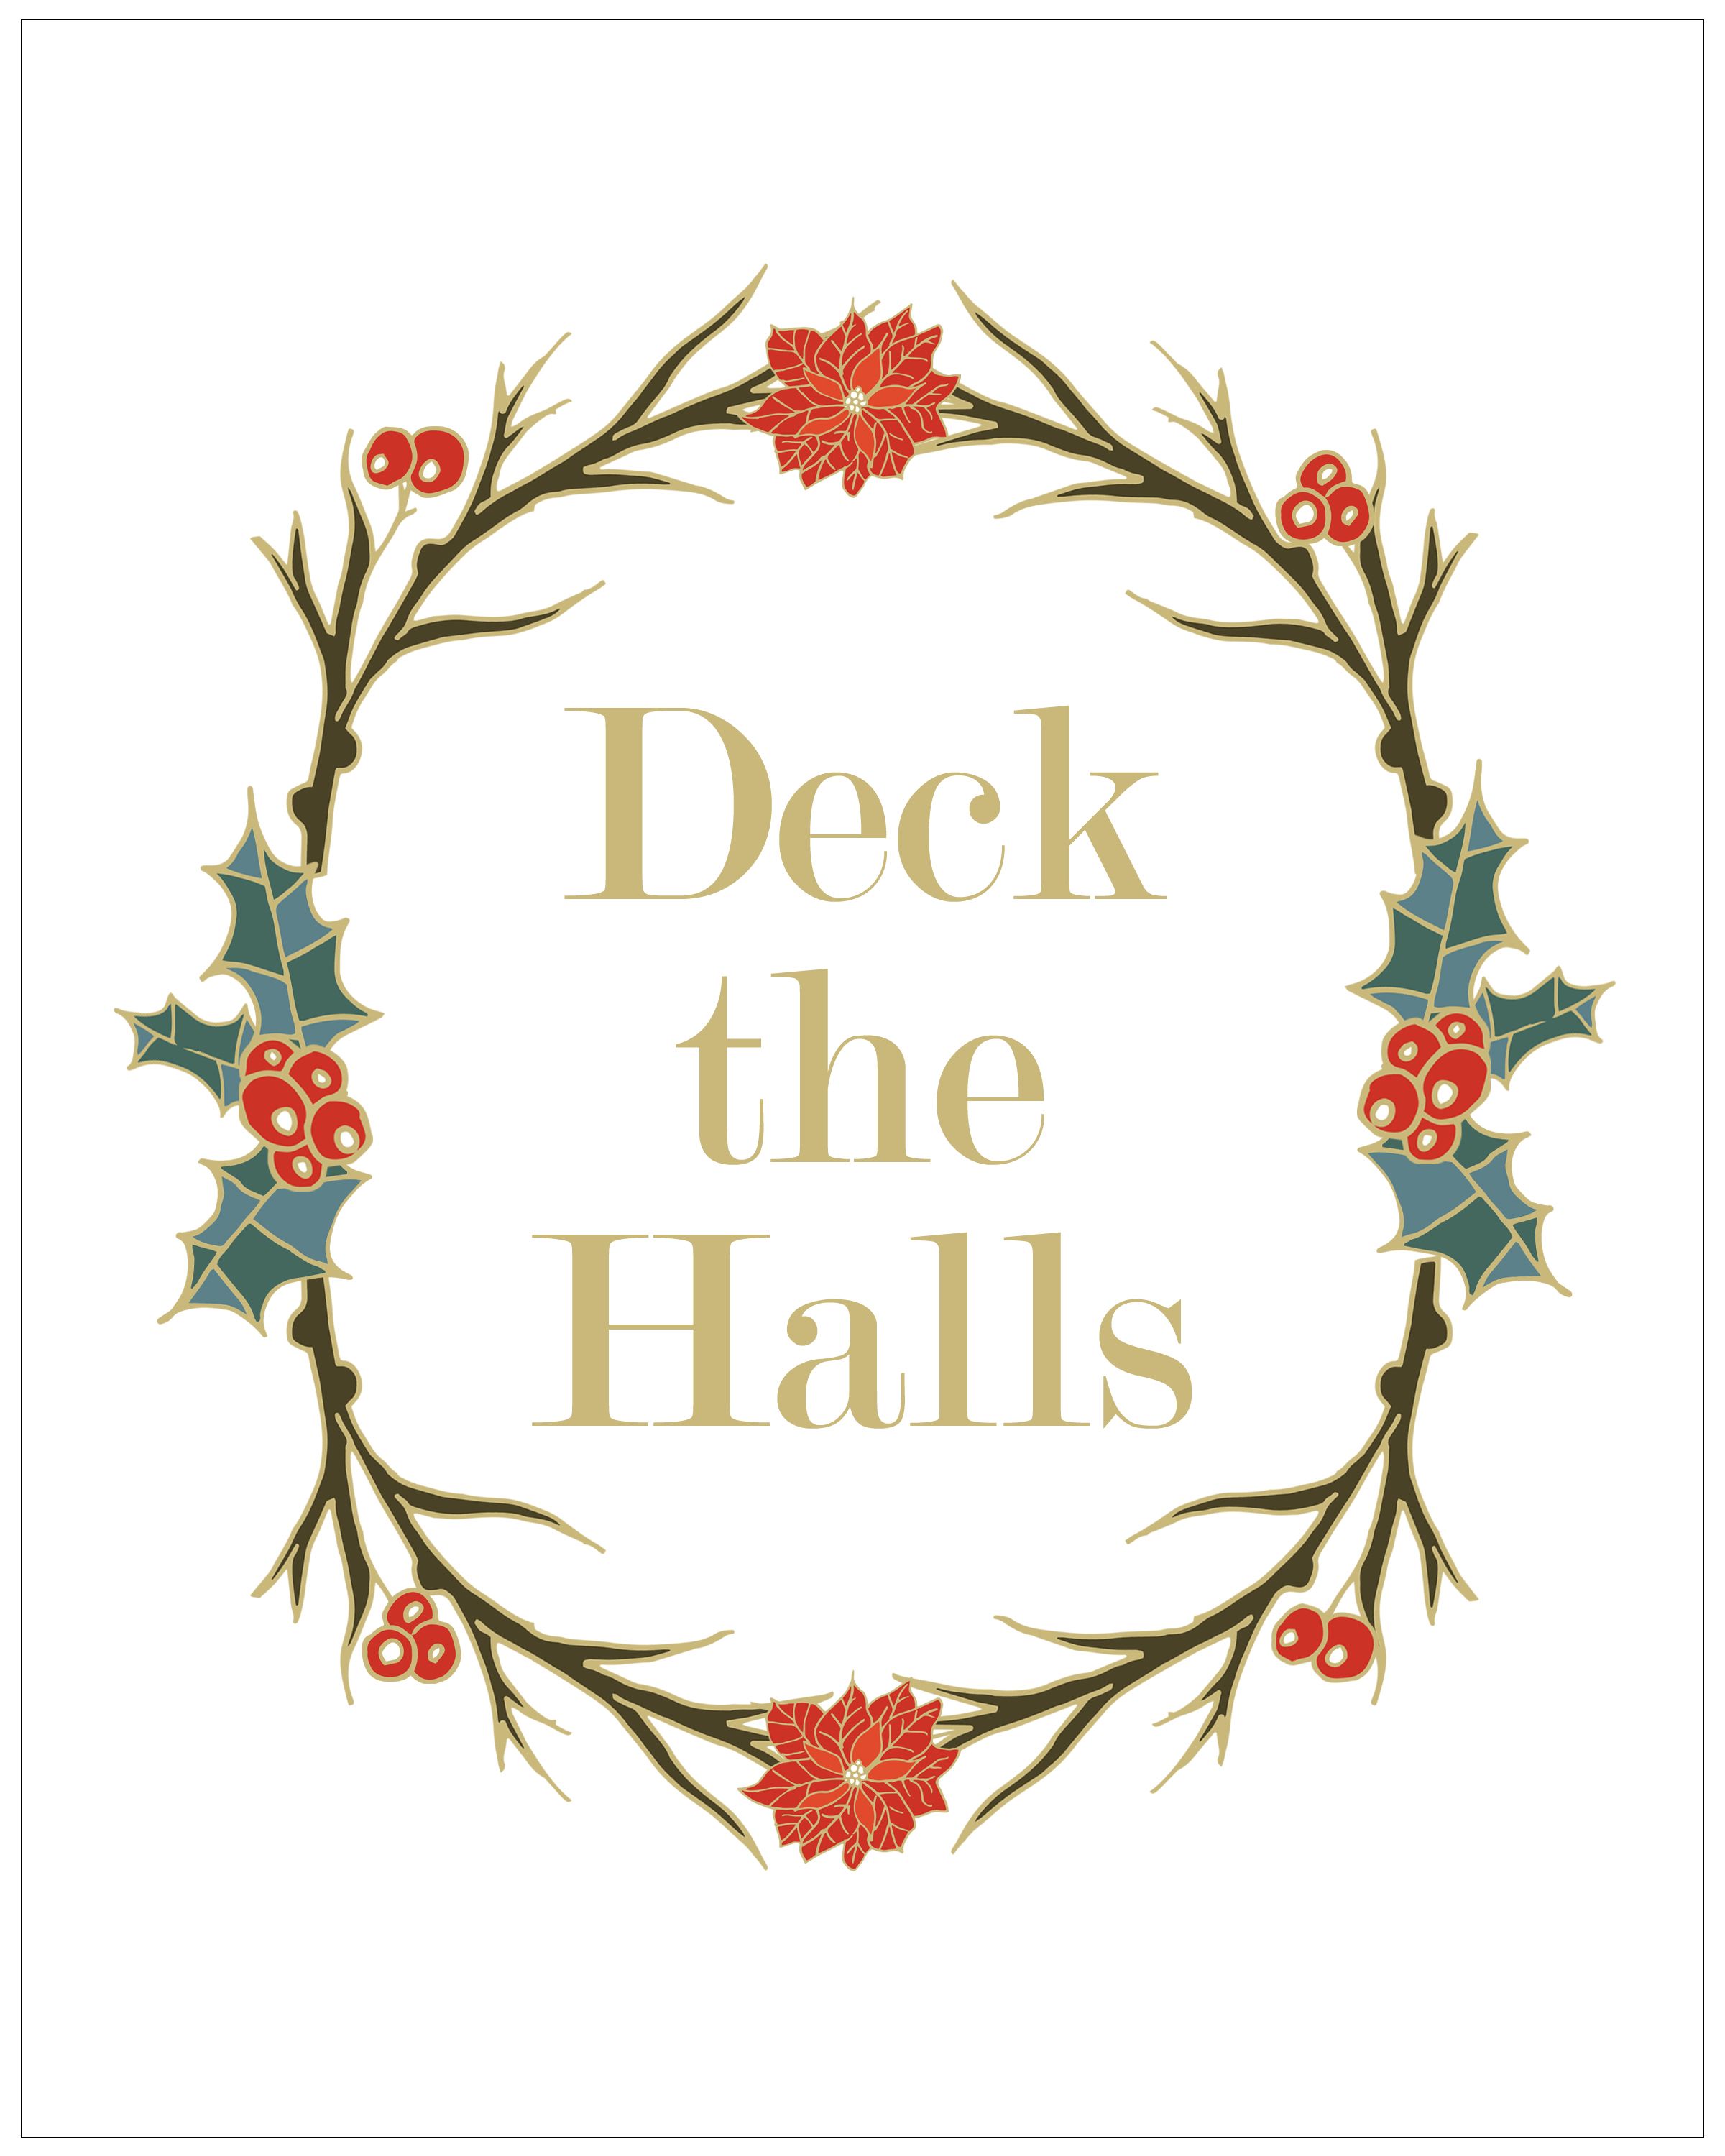 Christmas Decor Inspiration: Deck The Halls With Joyful Holiday Cheer